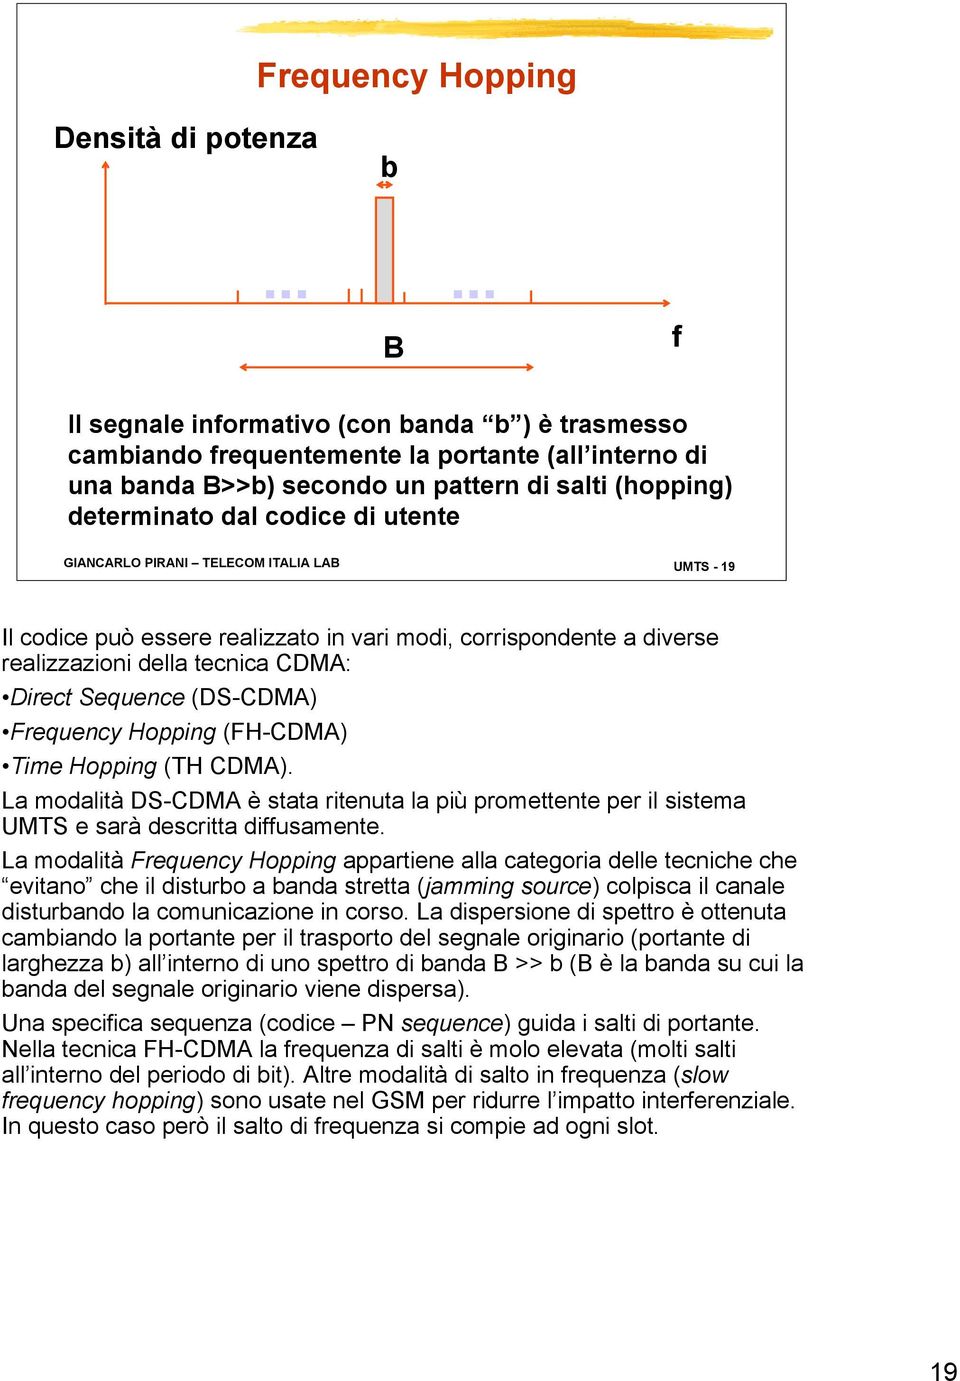 GIANCARLO PIRANI TELECOM ITALIA LAB UMTS - 9 Il codice può essere realizzato in vari modi, corrispondente a diverse realizzazioni della tecnica CDMA: Direct Sequence (DS-CDMA) Frequency Hopping